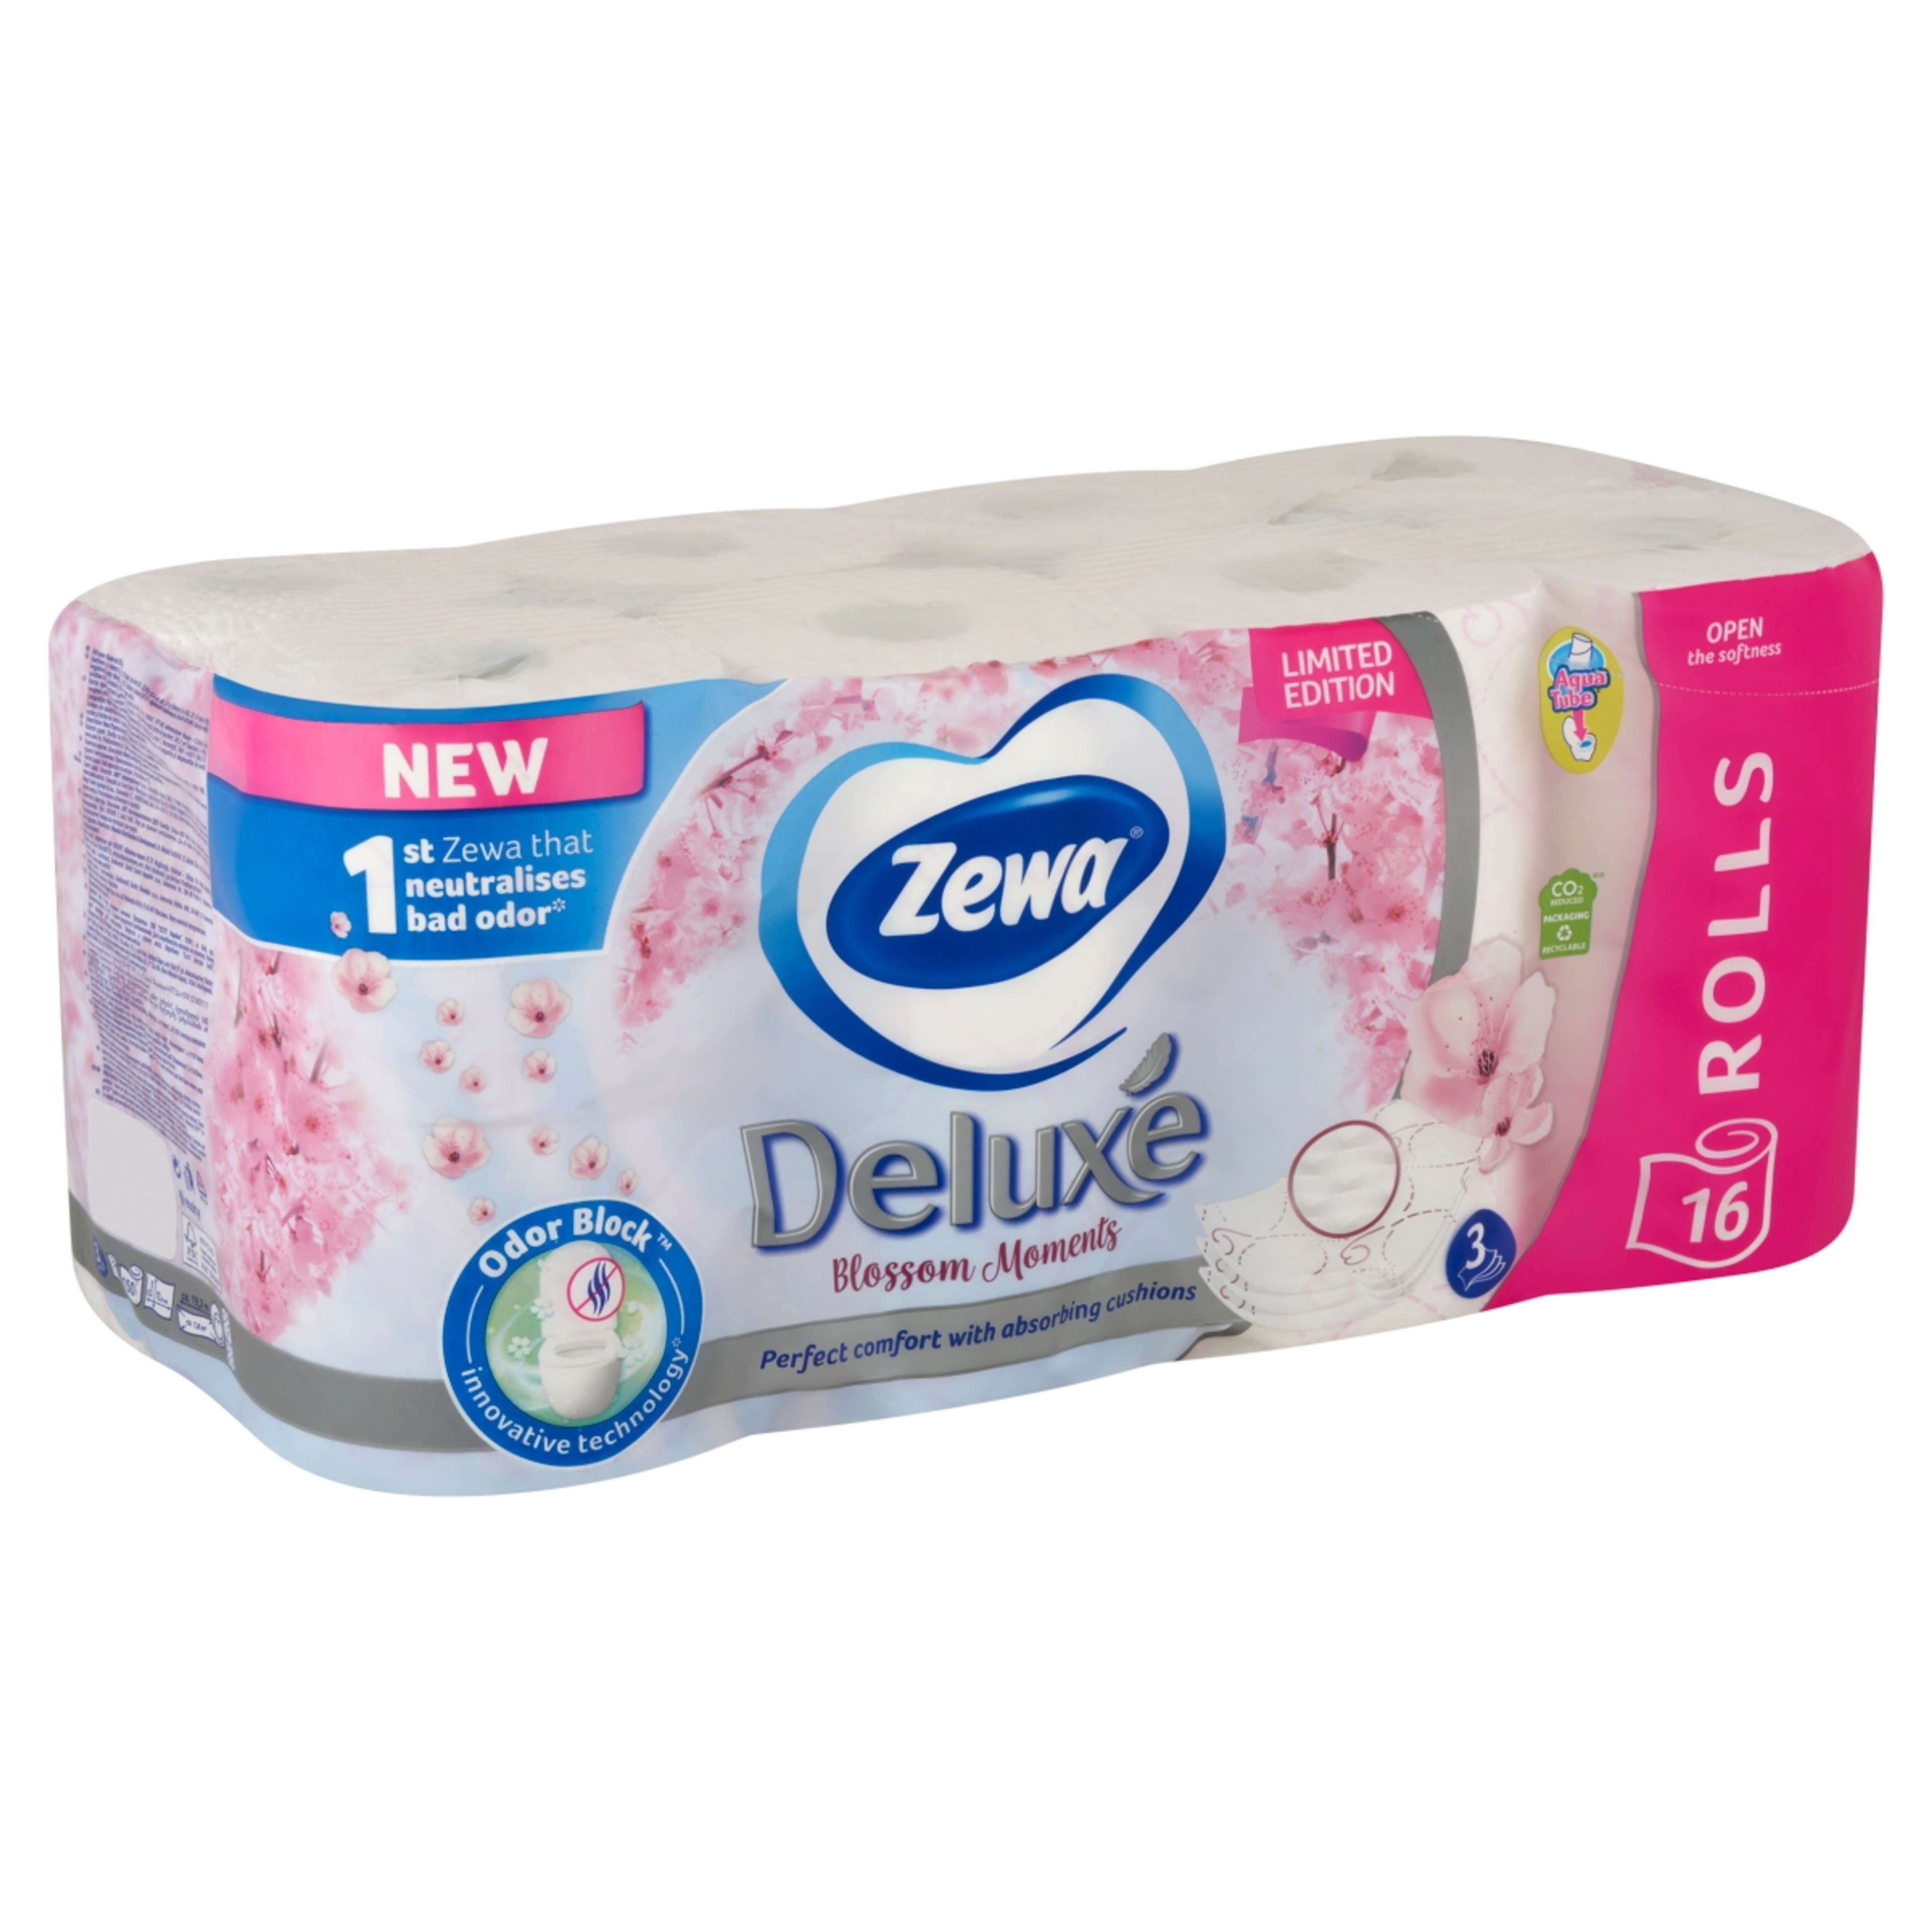 Zewa Deluxe Blossom Moments toalettpapír 3 rétegű - 16 db-2